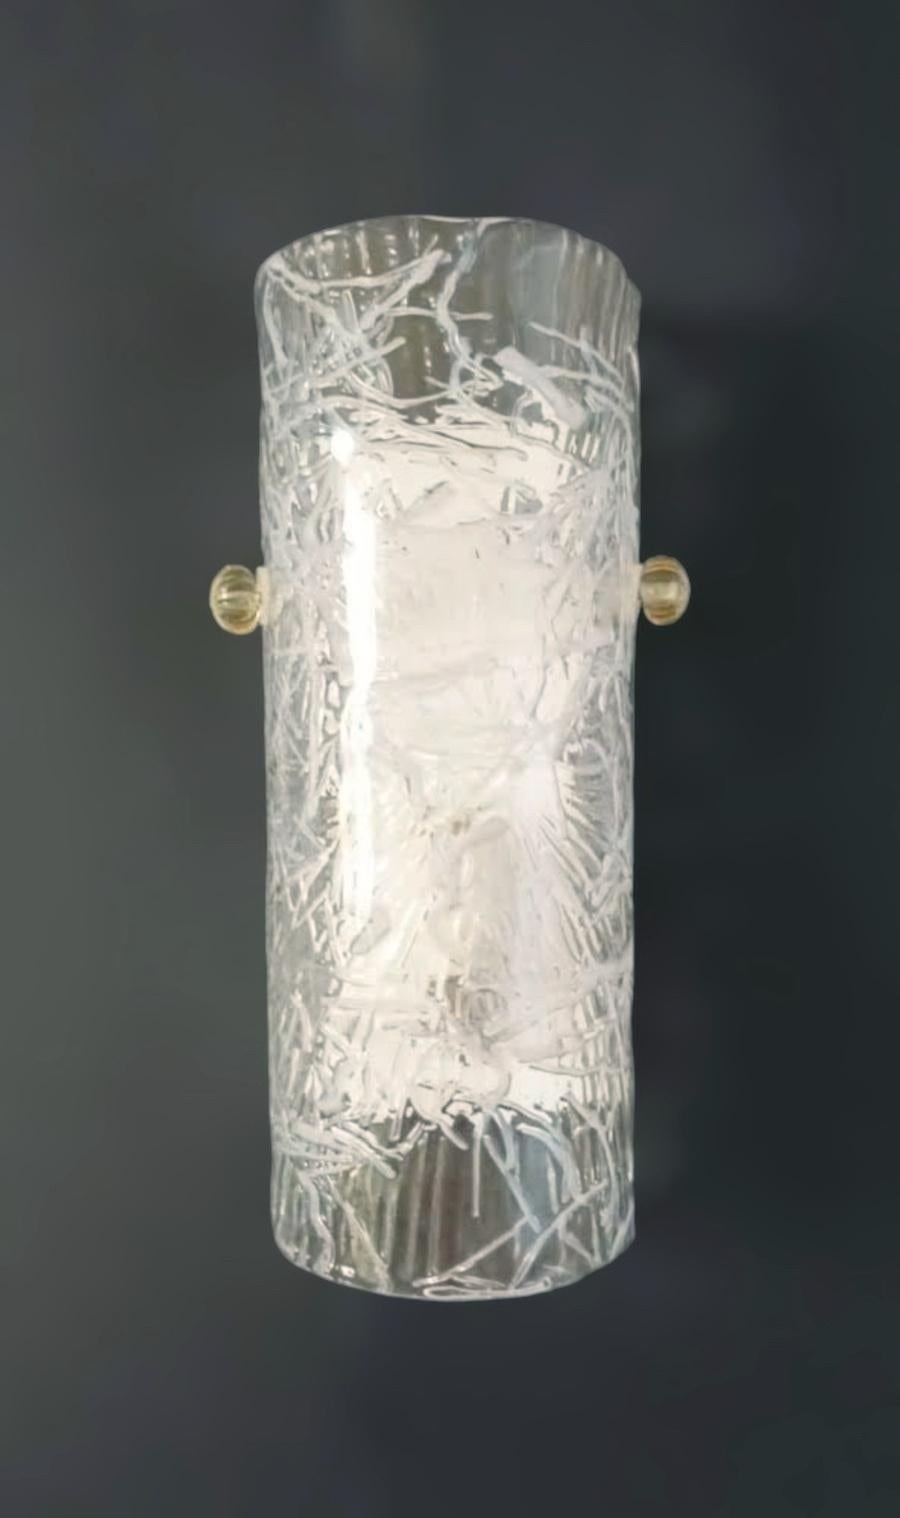 Italienische Wandleuchte mit einem zylindrischen Murano-Glasschirm in klarer Farbe mit weißer Textur, montiert auf weißem Metallrahmen / Made in Italy by Mazzega 1970er
Maße: Höhe 12 Zoll, Breite 6 Zoll, Tiefe 3,5 Zoll
1 Leuchte / Typ E12 oder E14 /